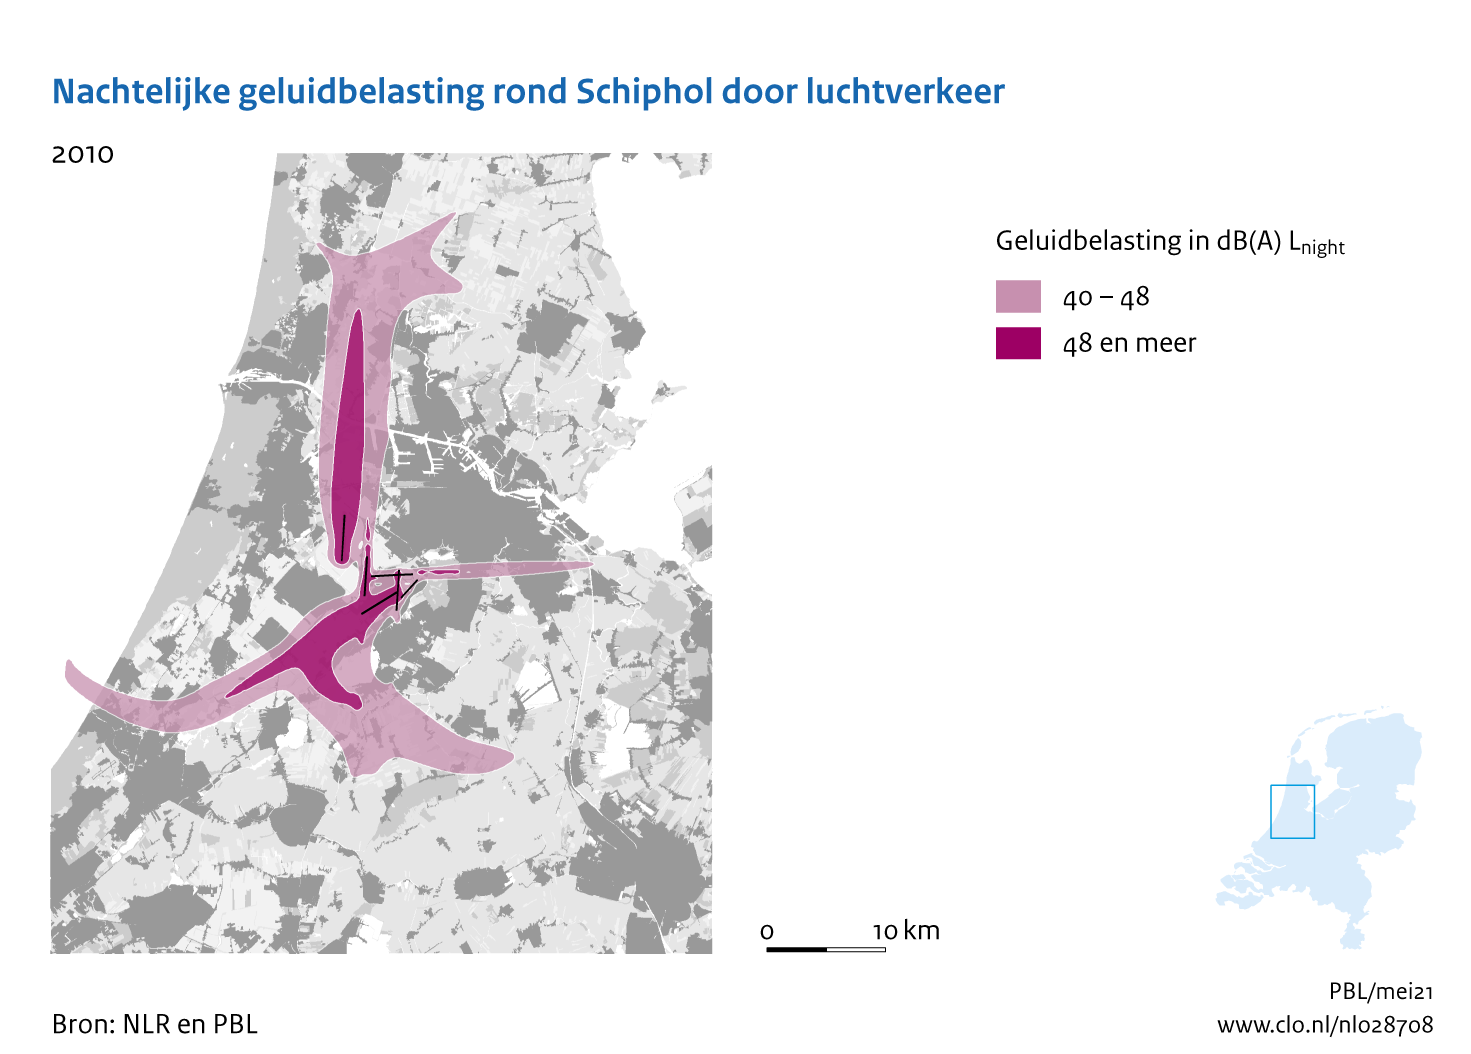 Figuur Nachtelijke geluidbelasting rond Schiphol door luchtverkeer, 2010. In de rest van de tekst wordt deze figuur uitgebreider uitgelegd.